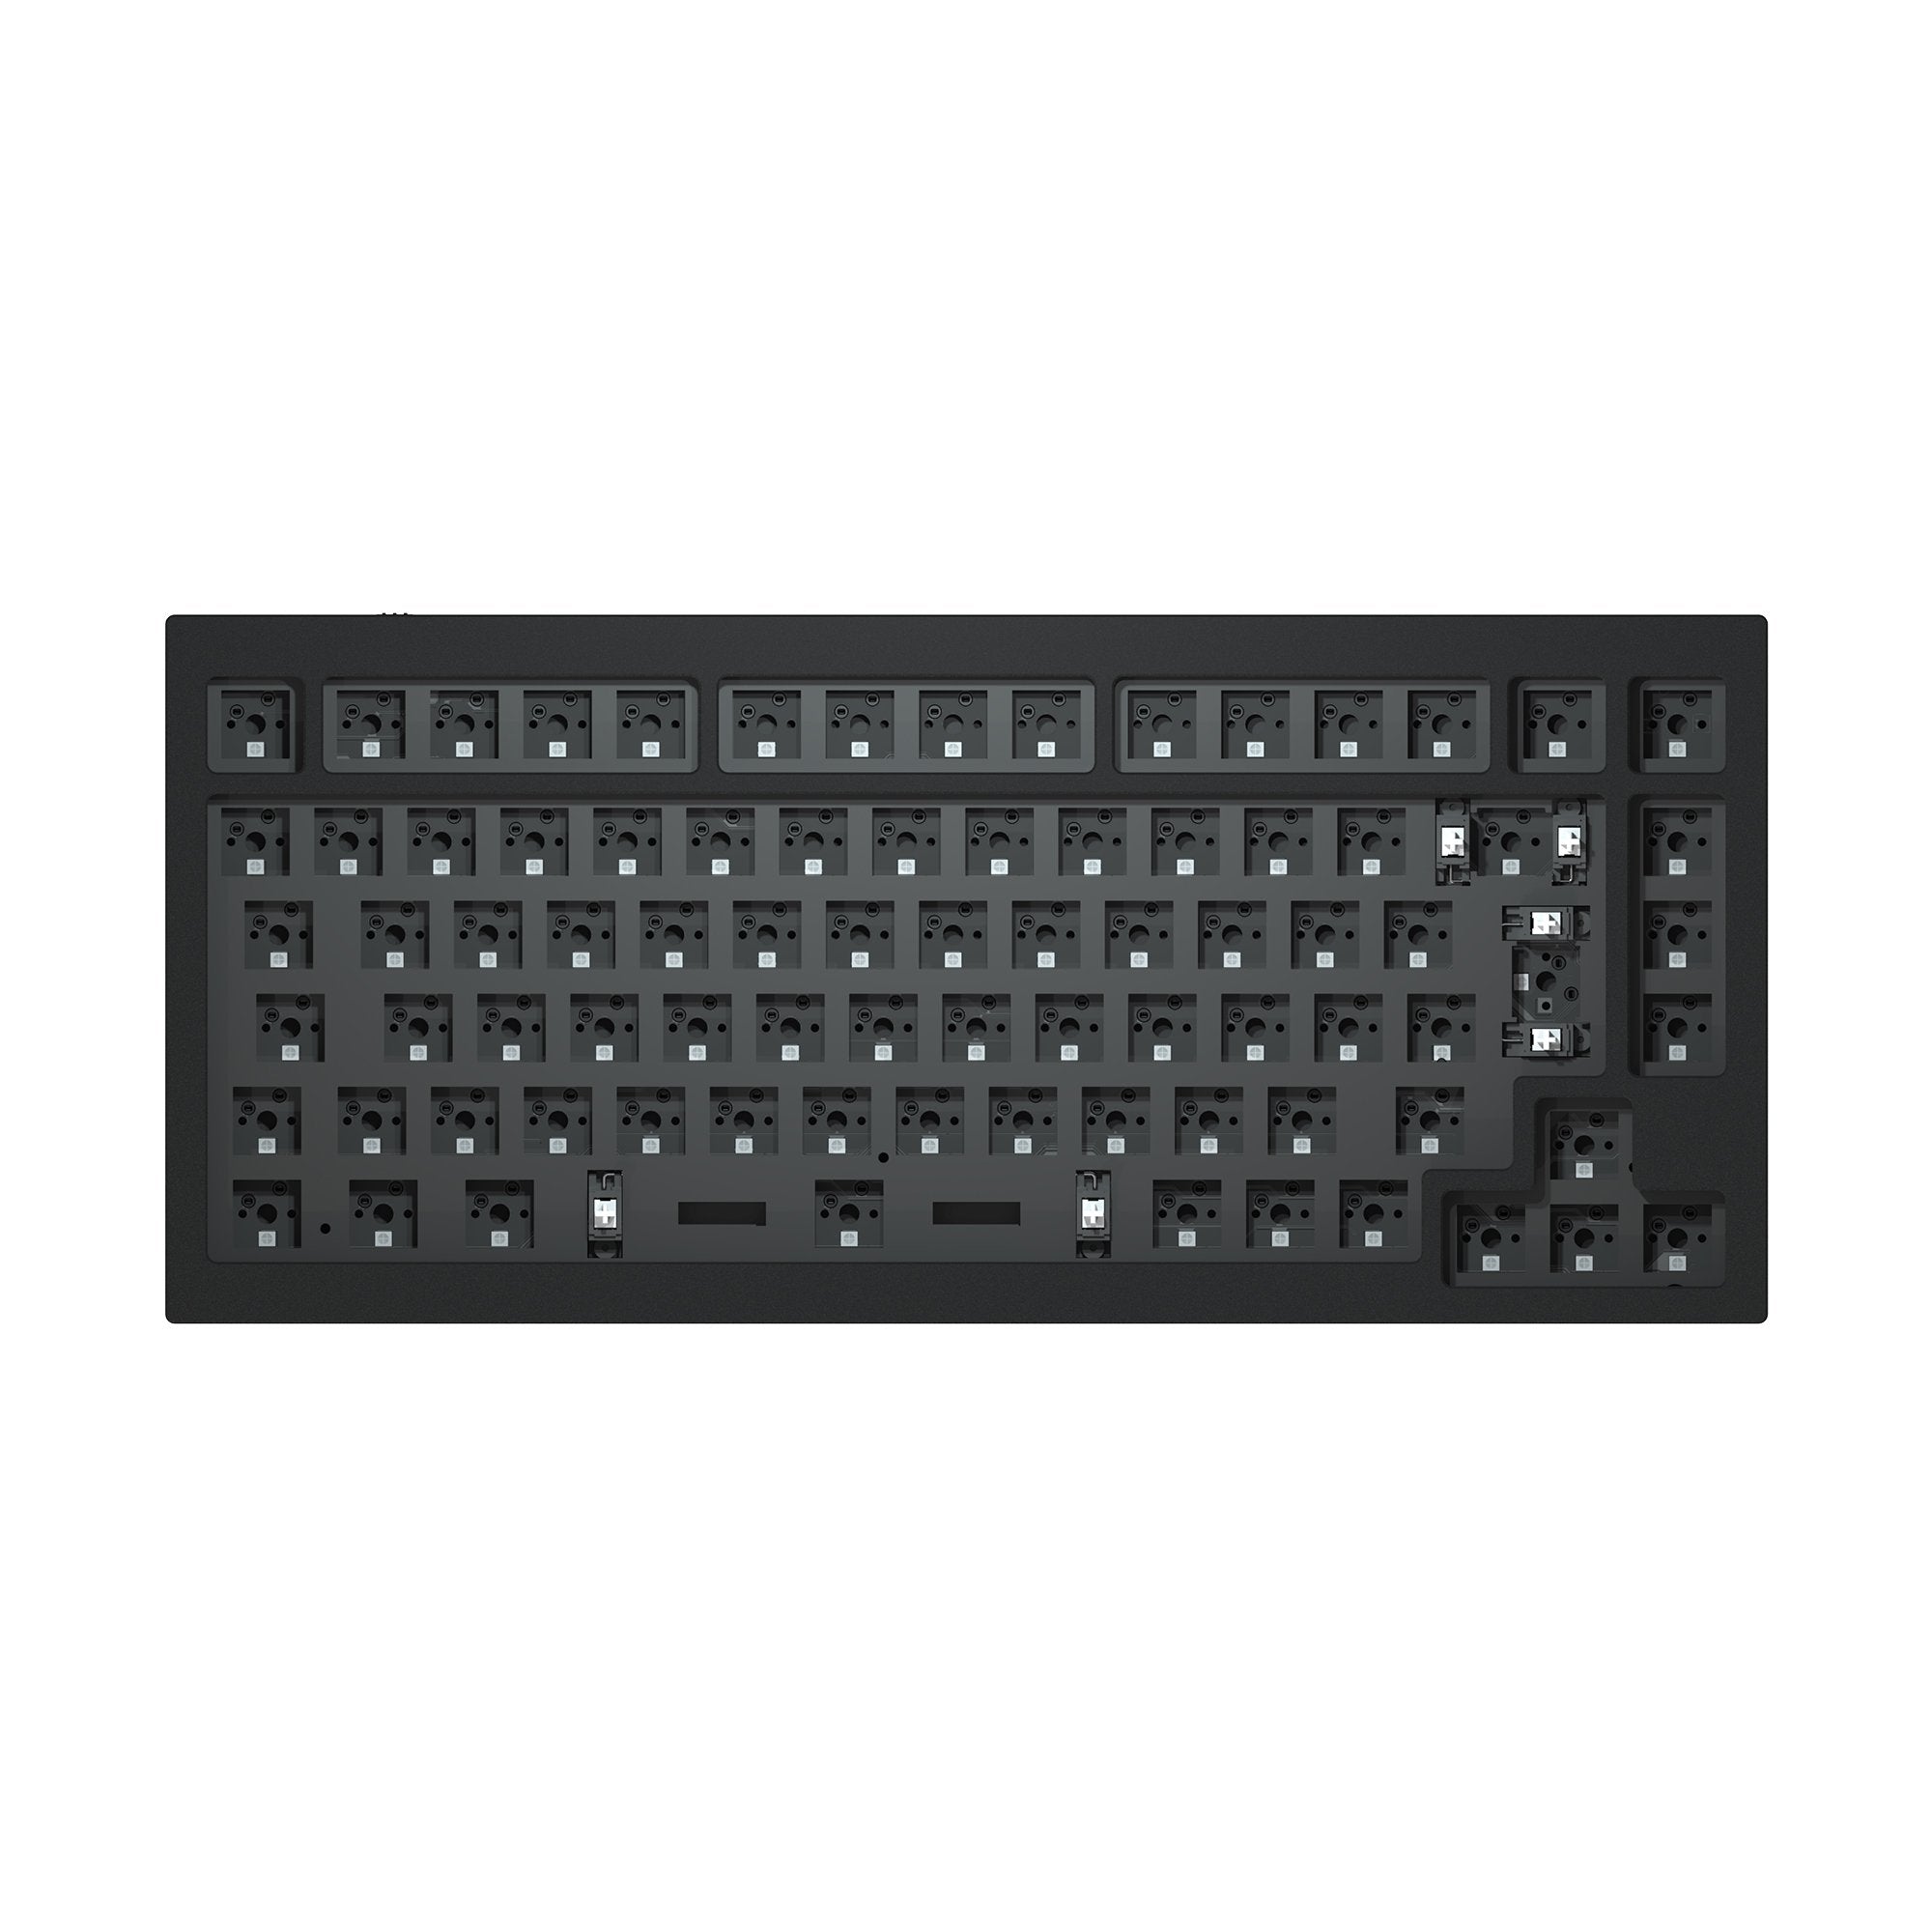 Keychron Q1 QMK Benutzerdefinierte Mechanische Tastatur - Version 1